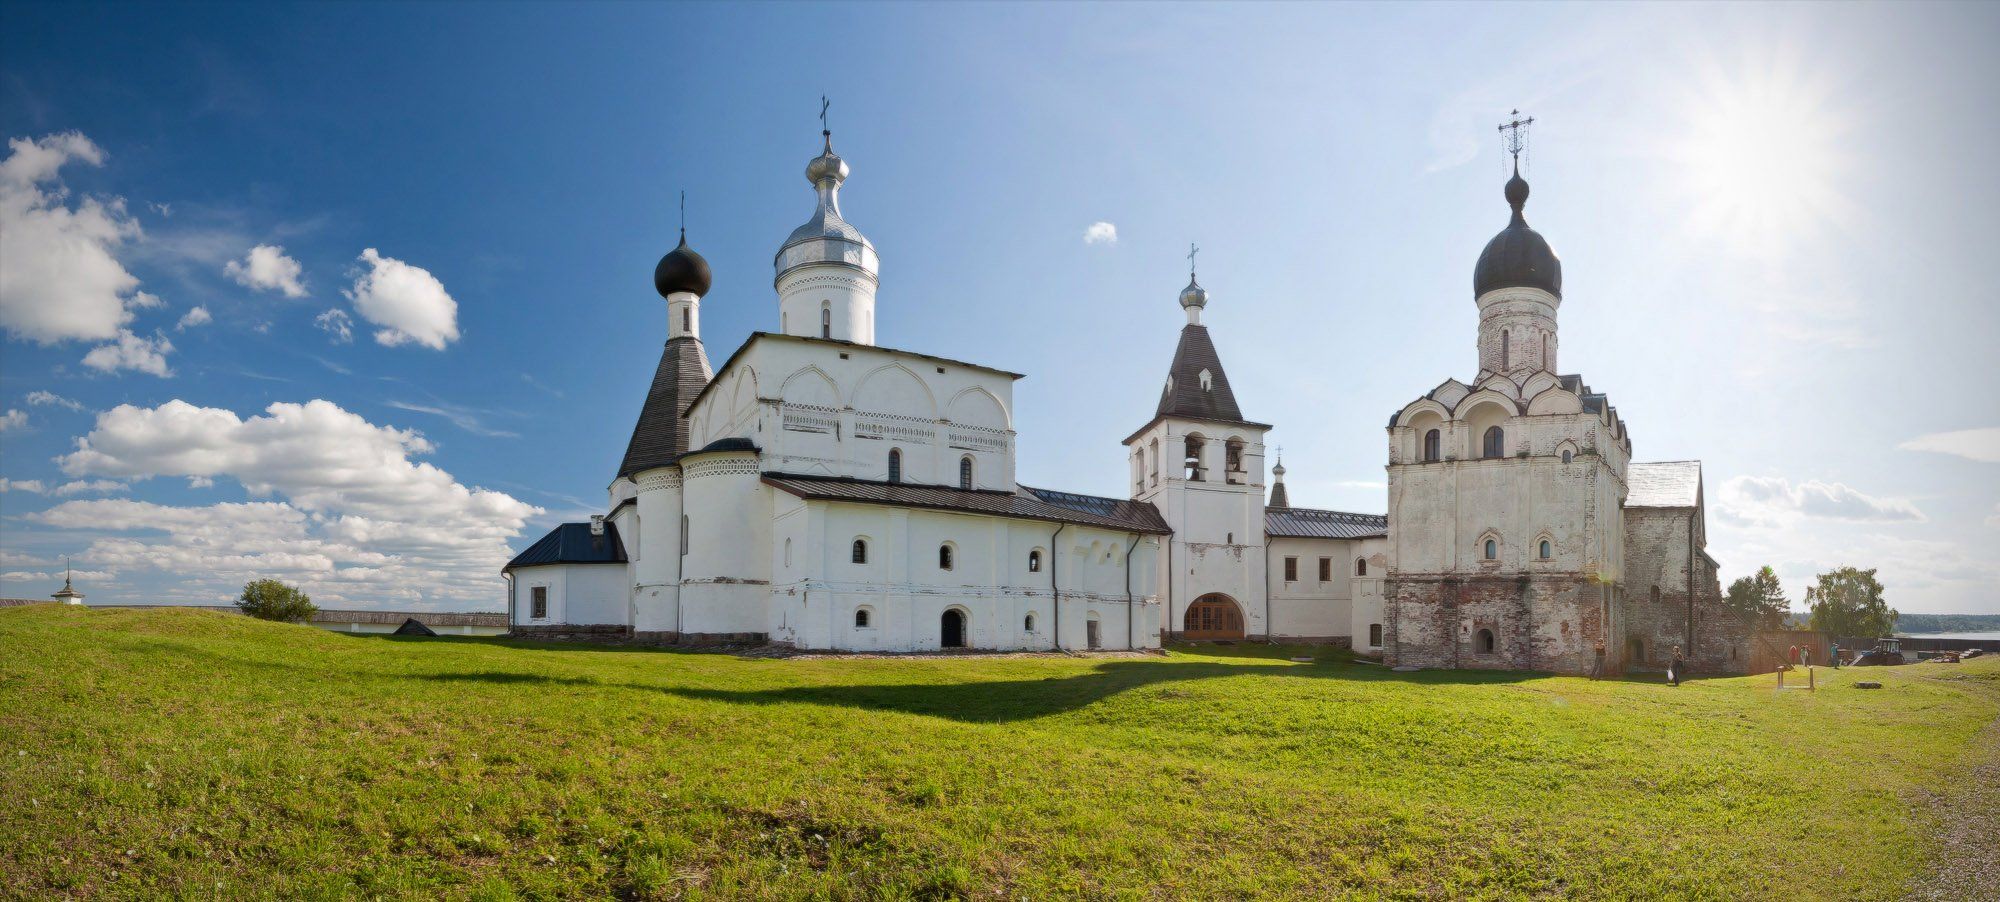 ферапонтово, монастырь, архитектура, Nikolai (locus)